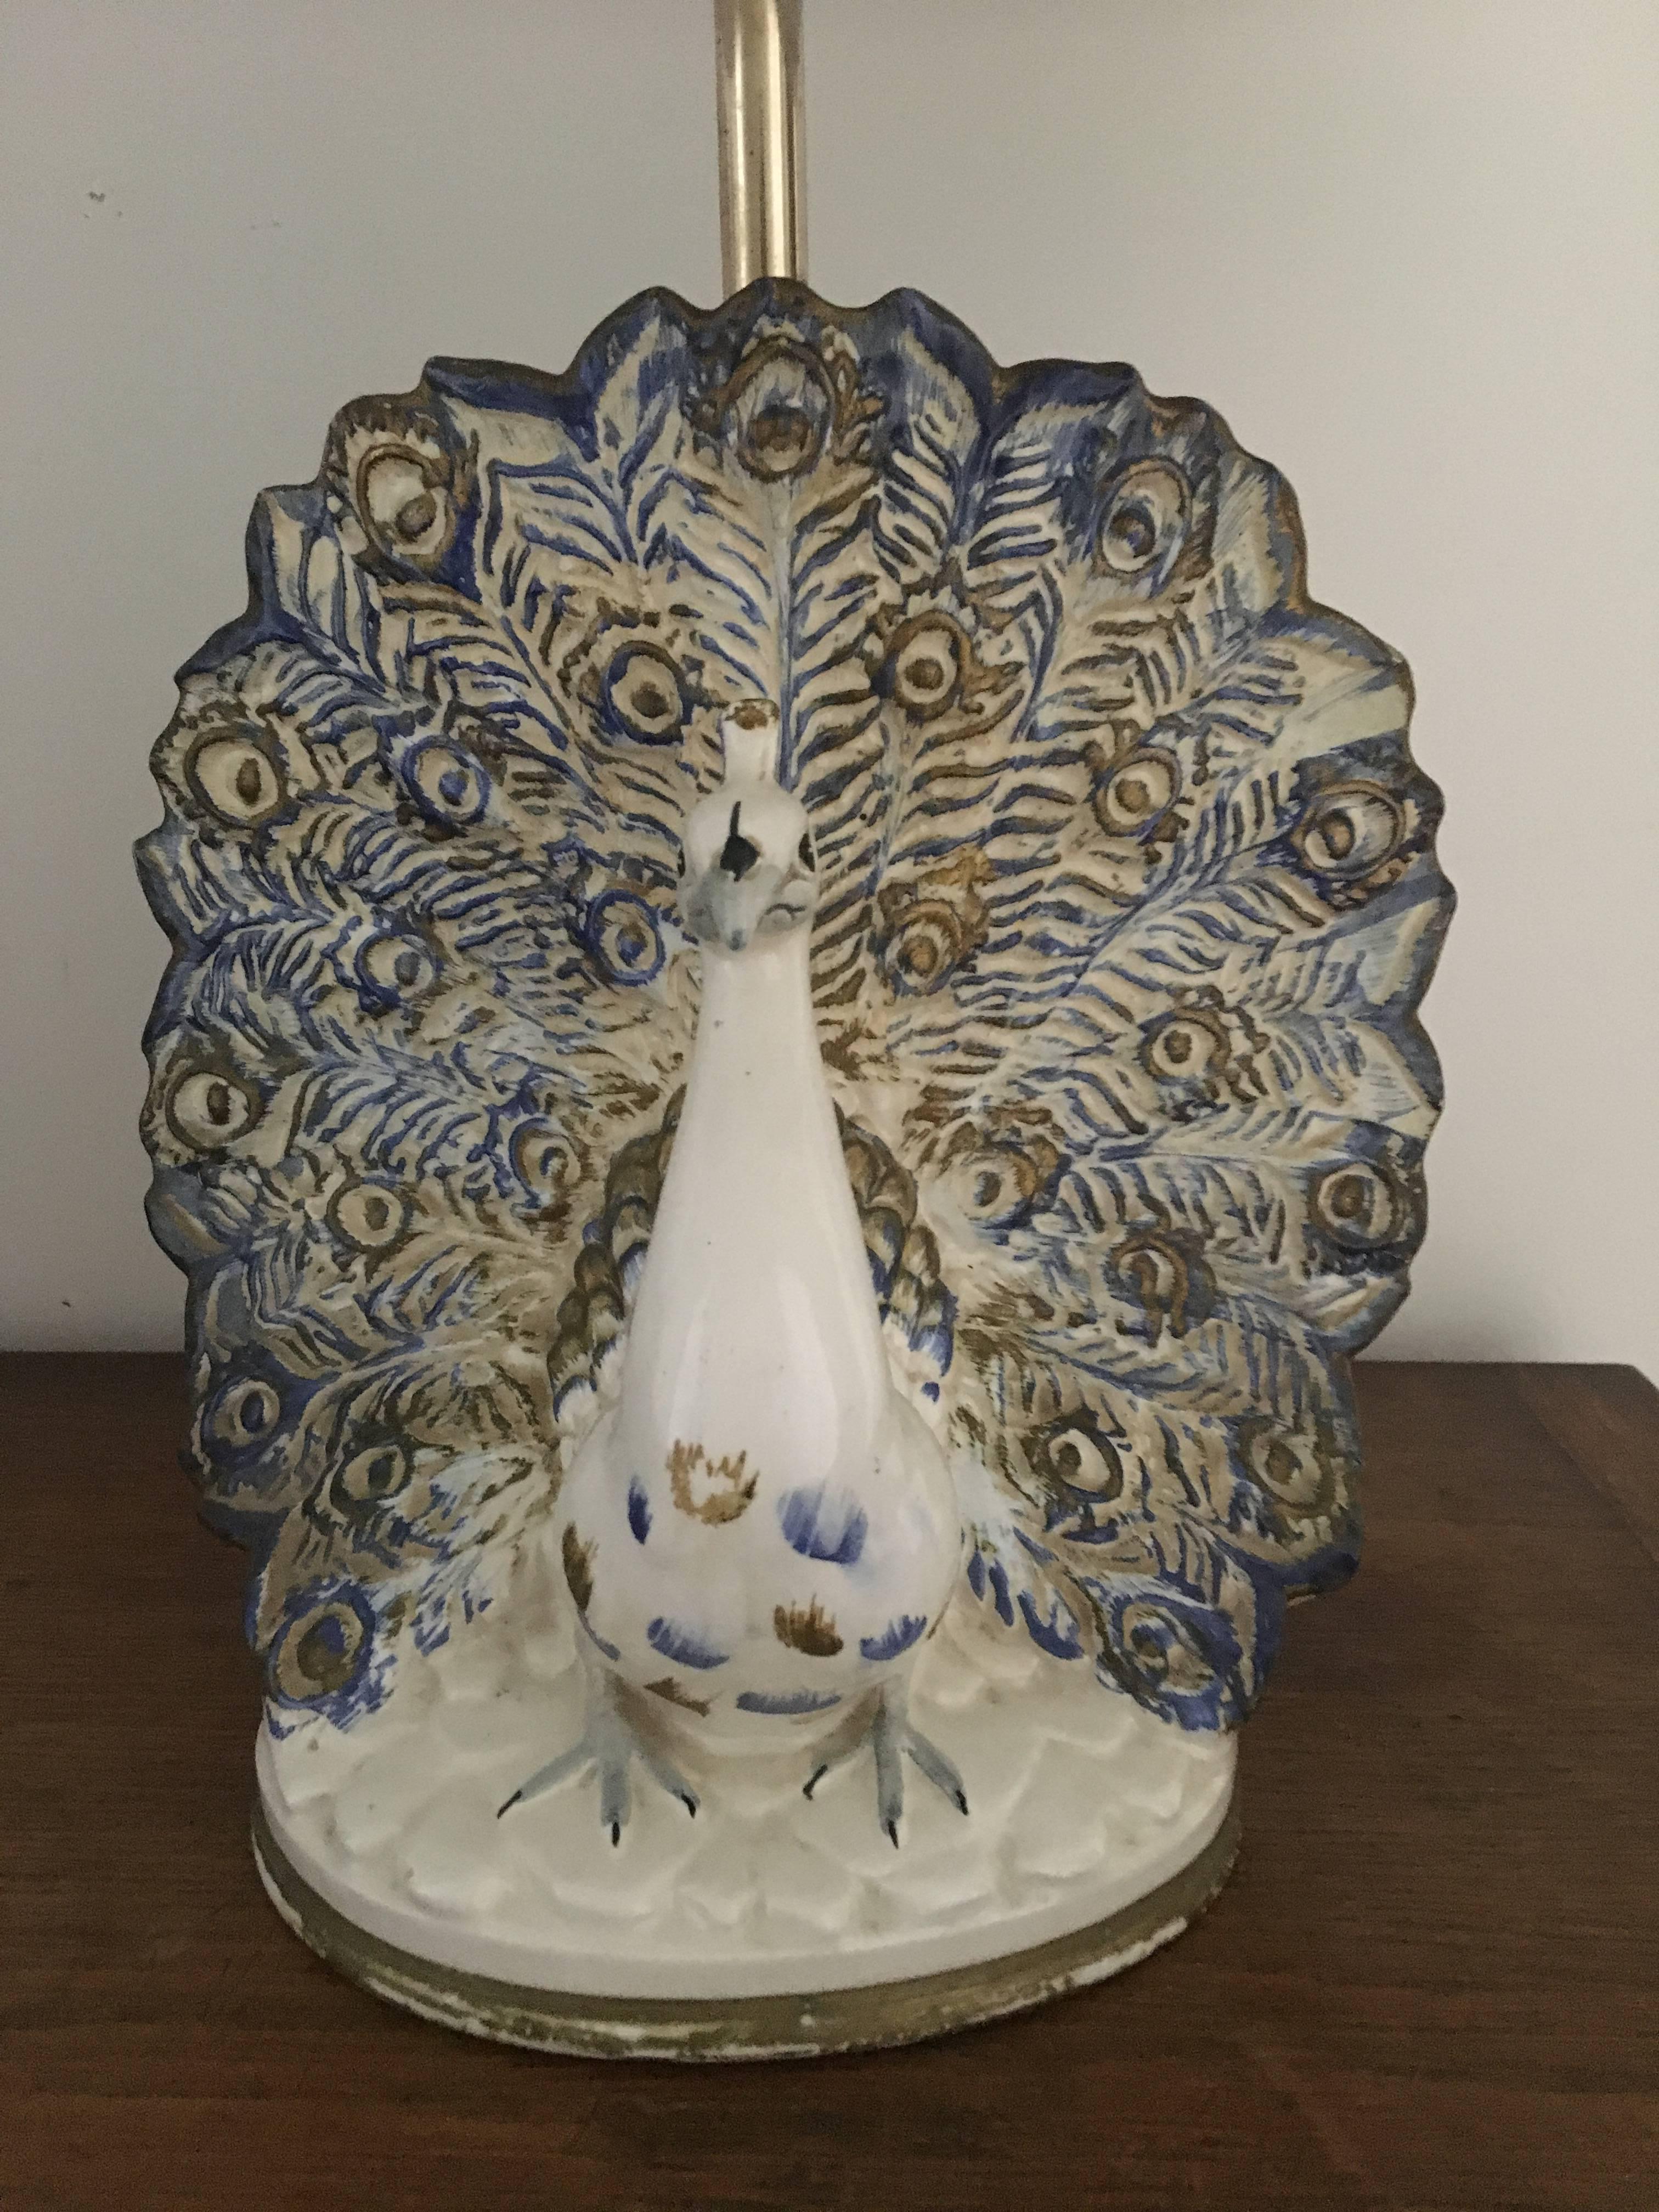 Schöner Pfau aus Keramik aus den 1960er Jahren mit Messingstiel.
Europäische Verkabelung